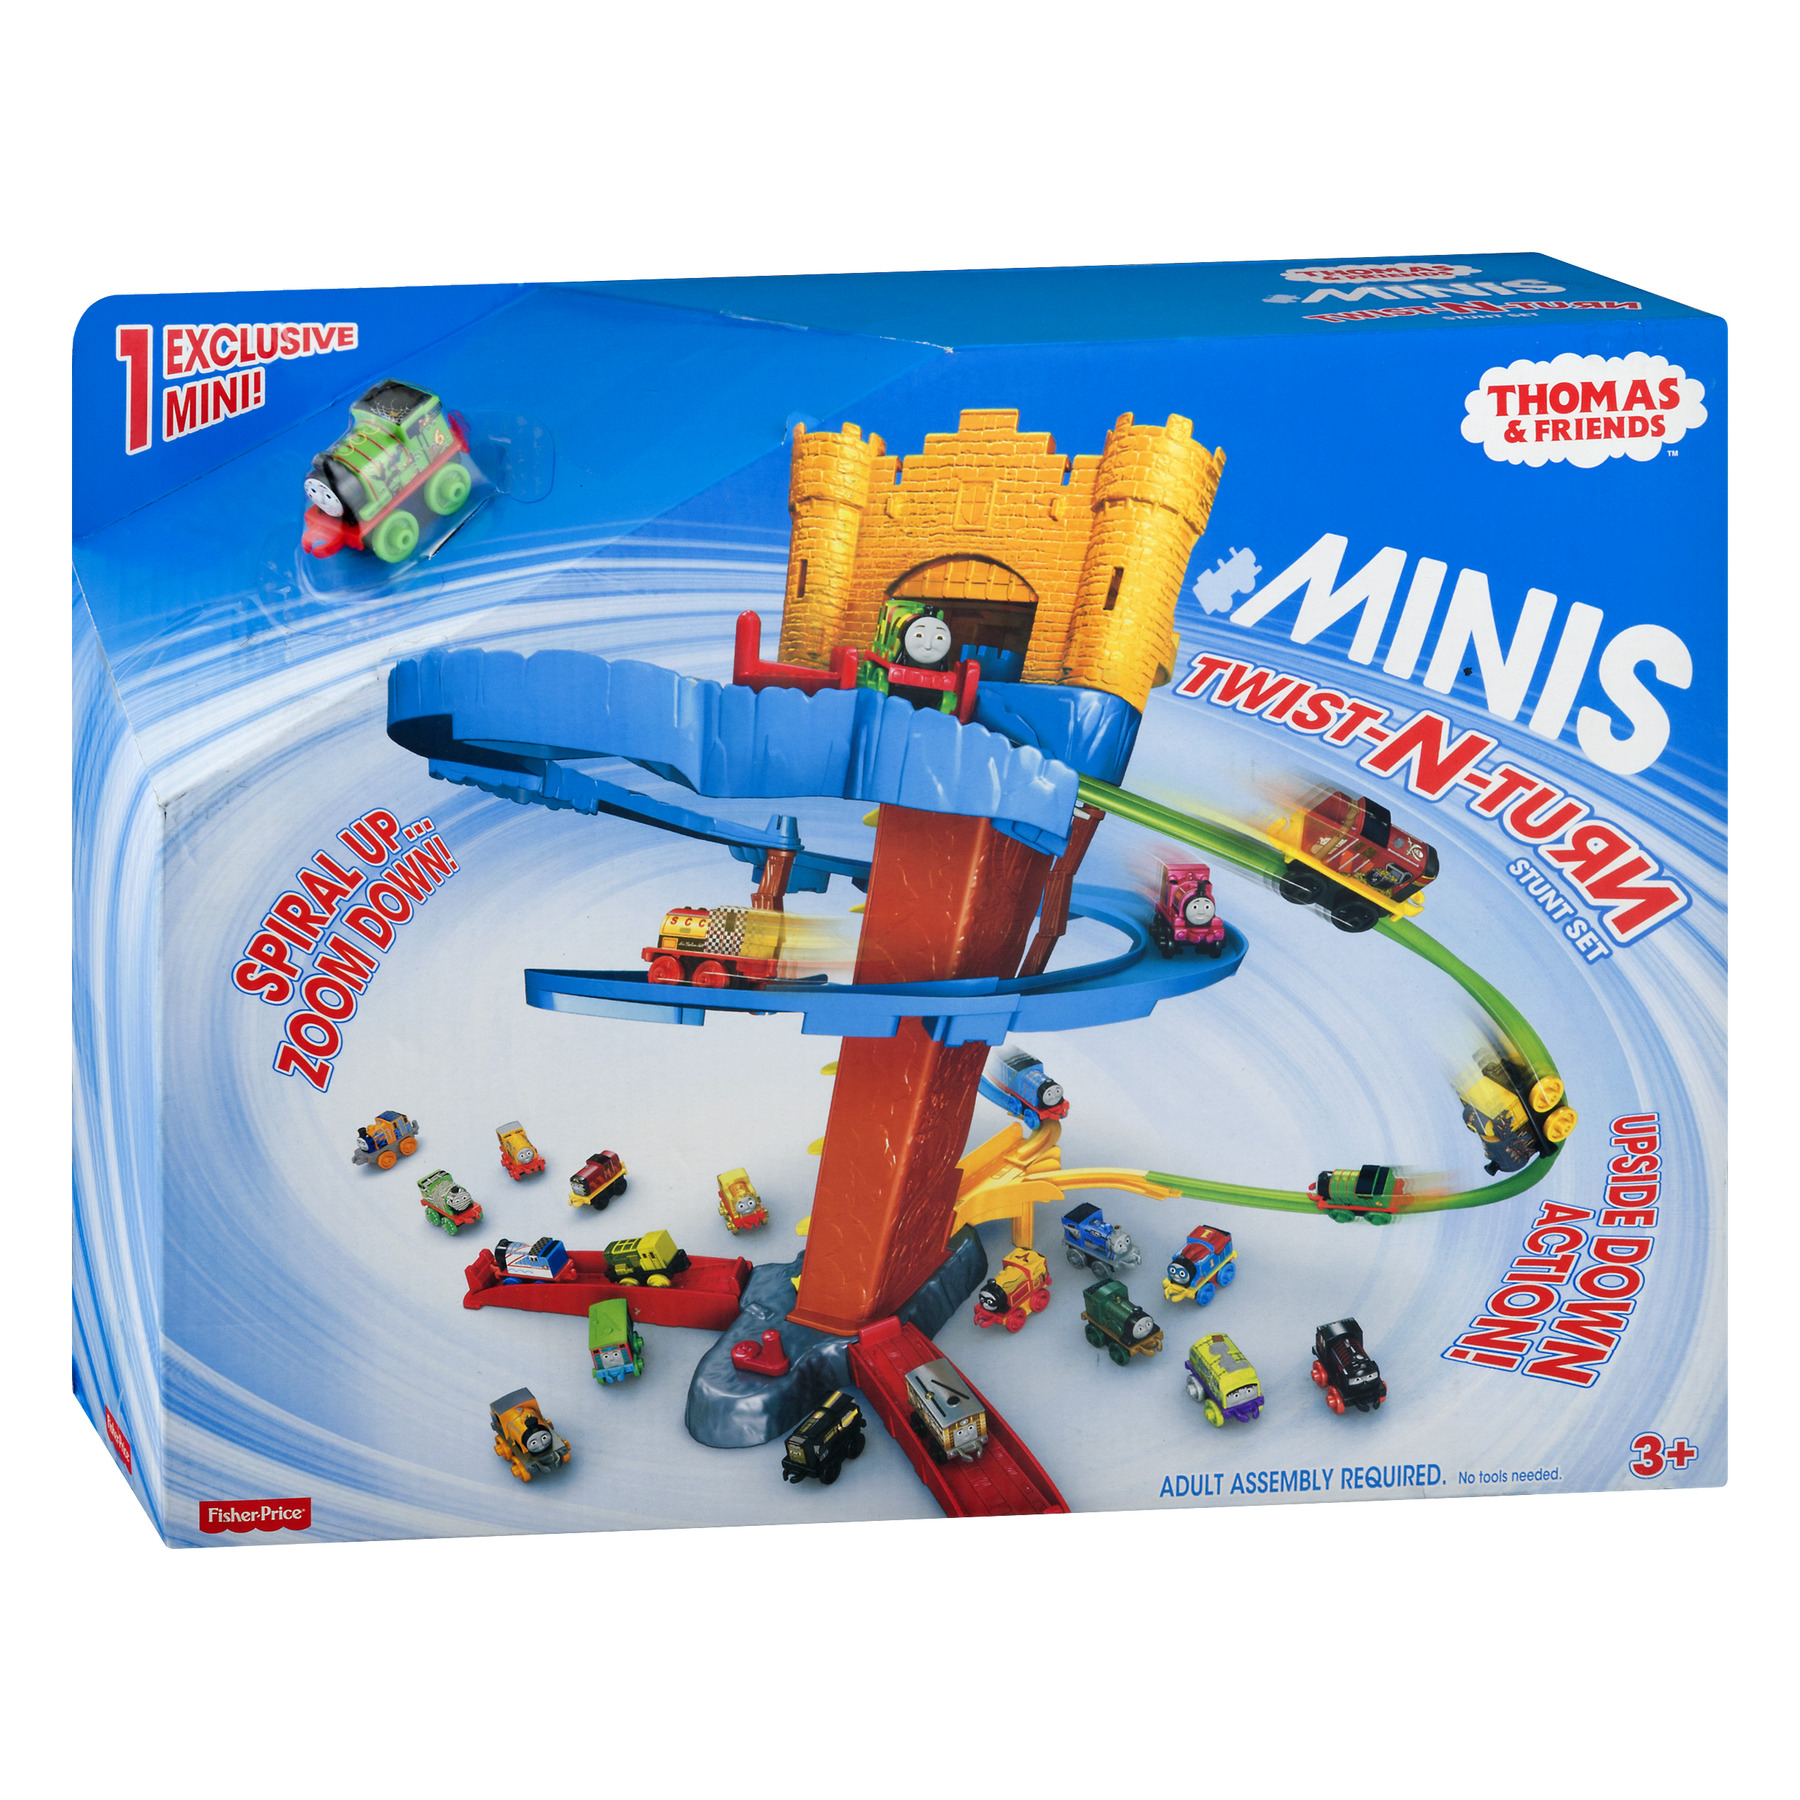 Thomas & Friends MINIS Twist-N-Turn Stunt Set - image 3 of 7